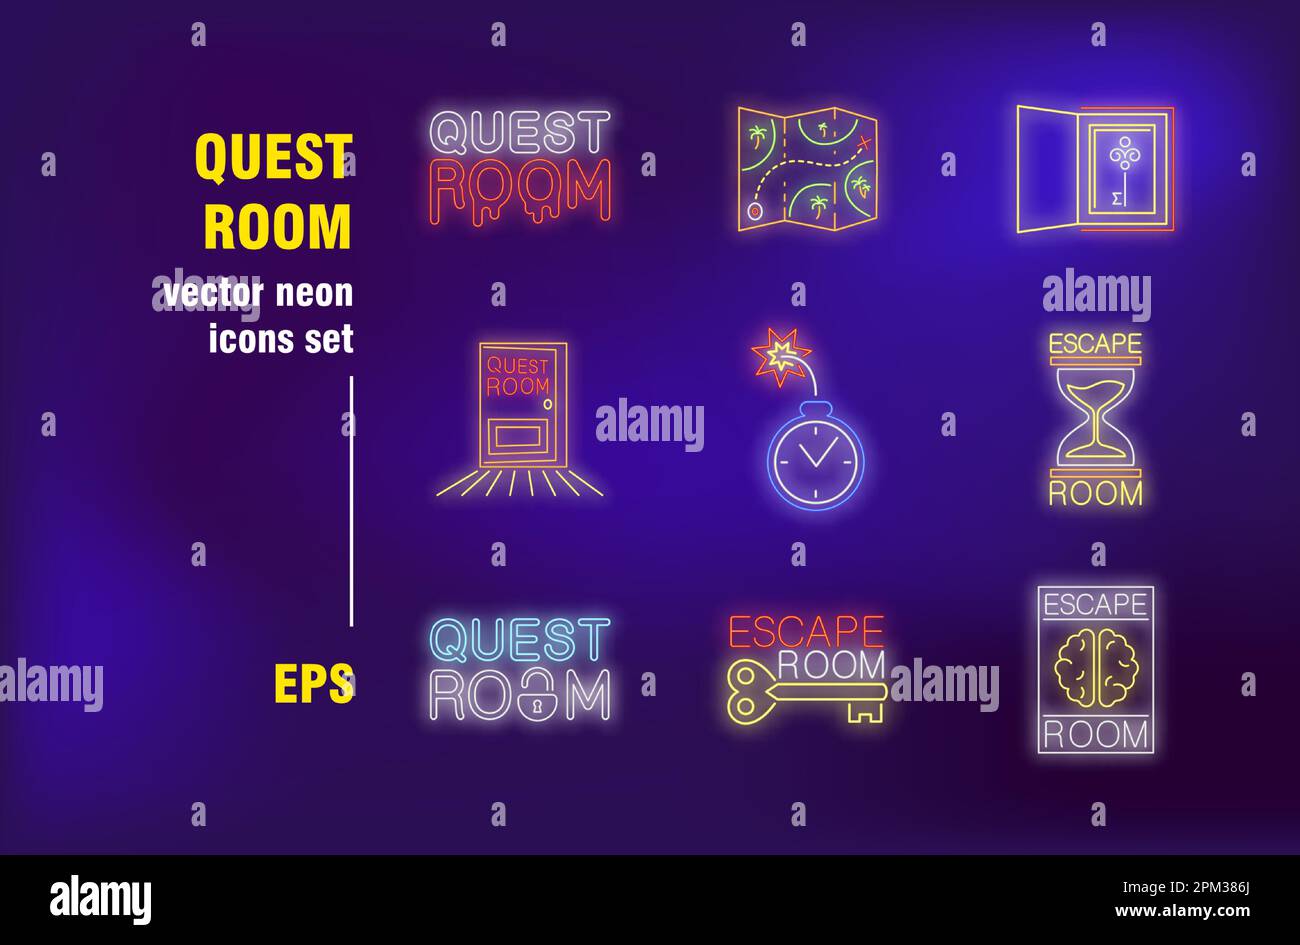 Quest Room mit Neonschildern Stock Vektor